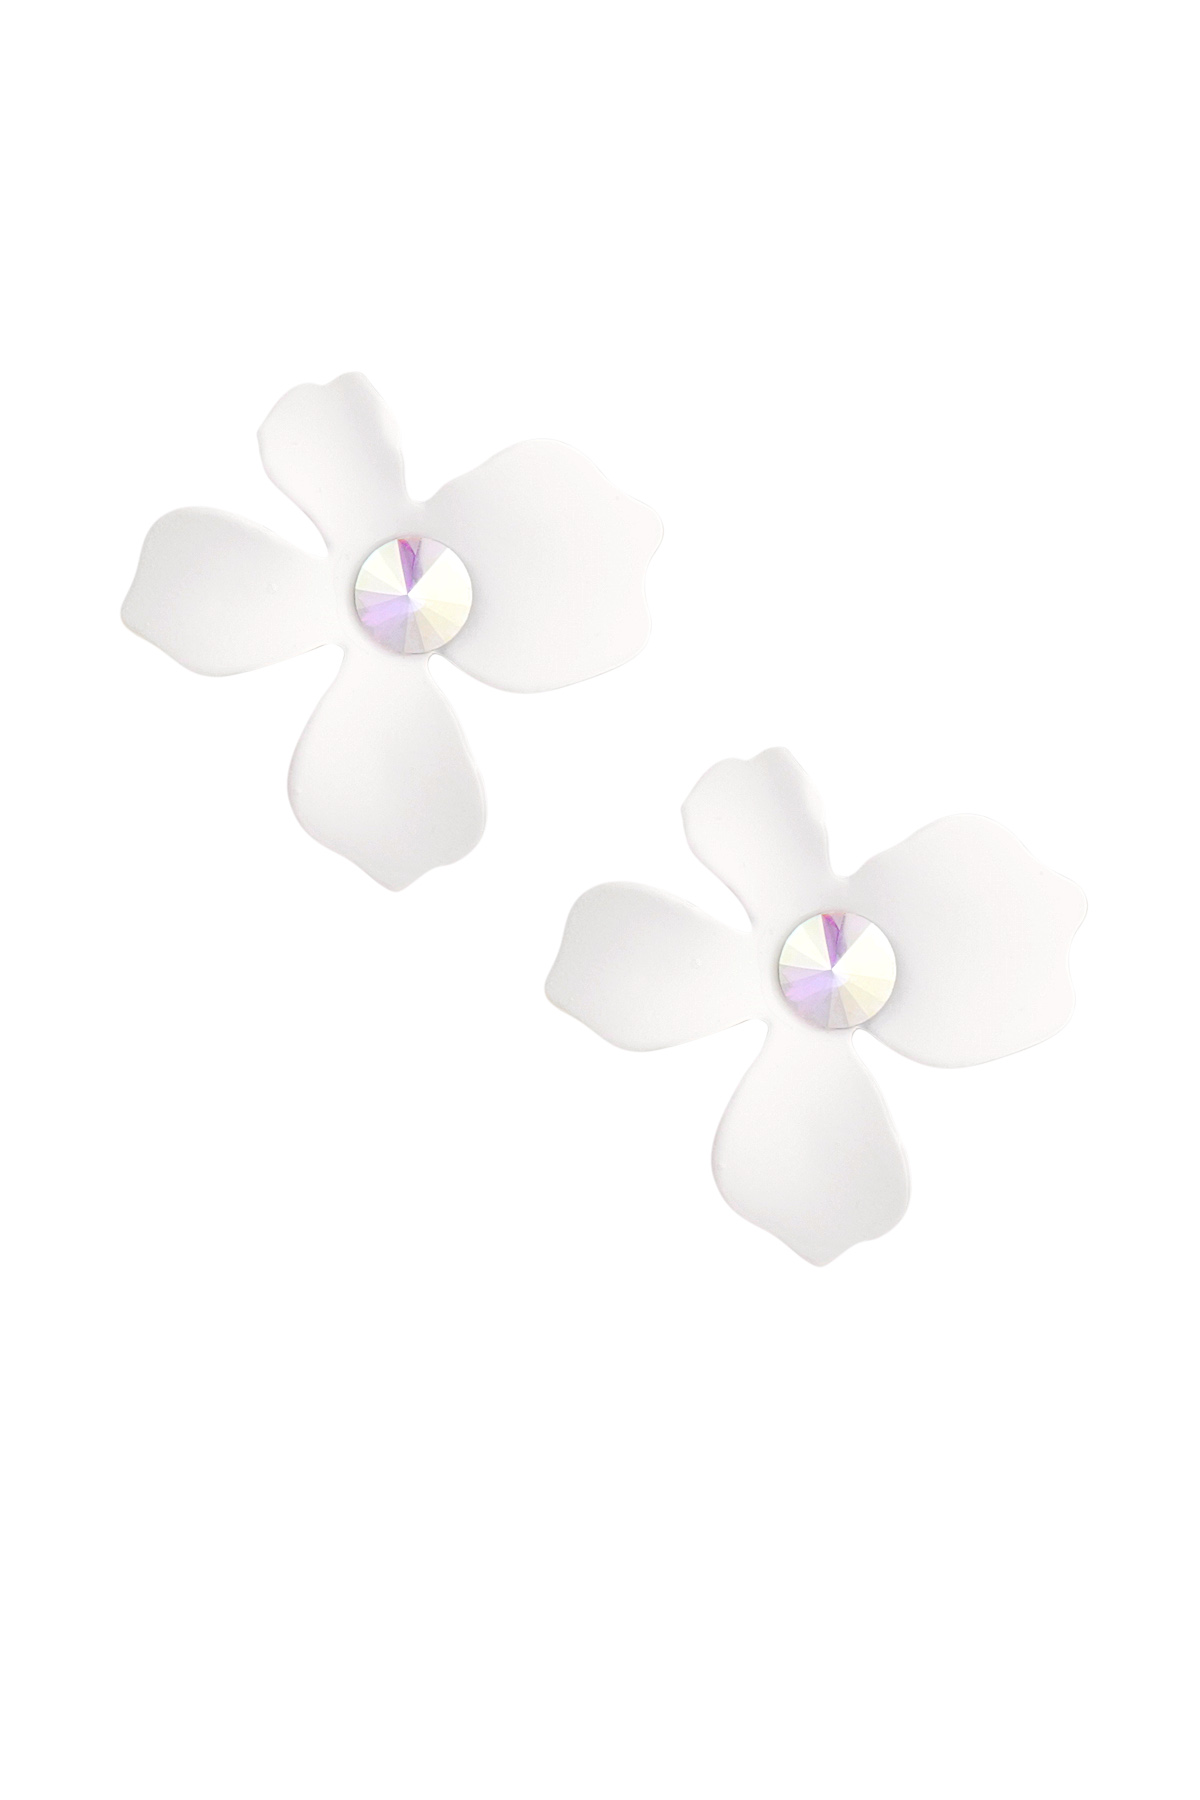 Yaz çiçekli küpe - beyaz h5 